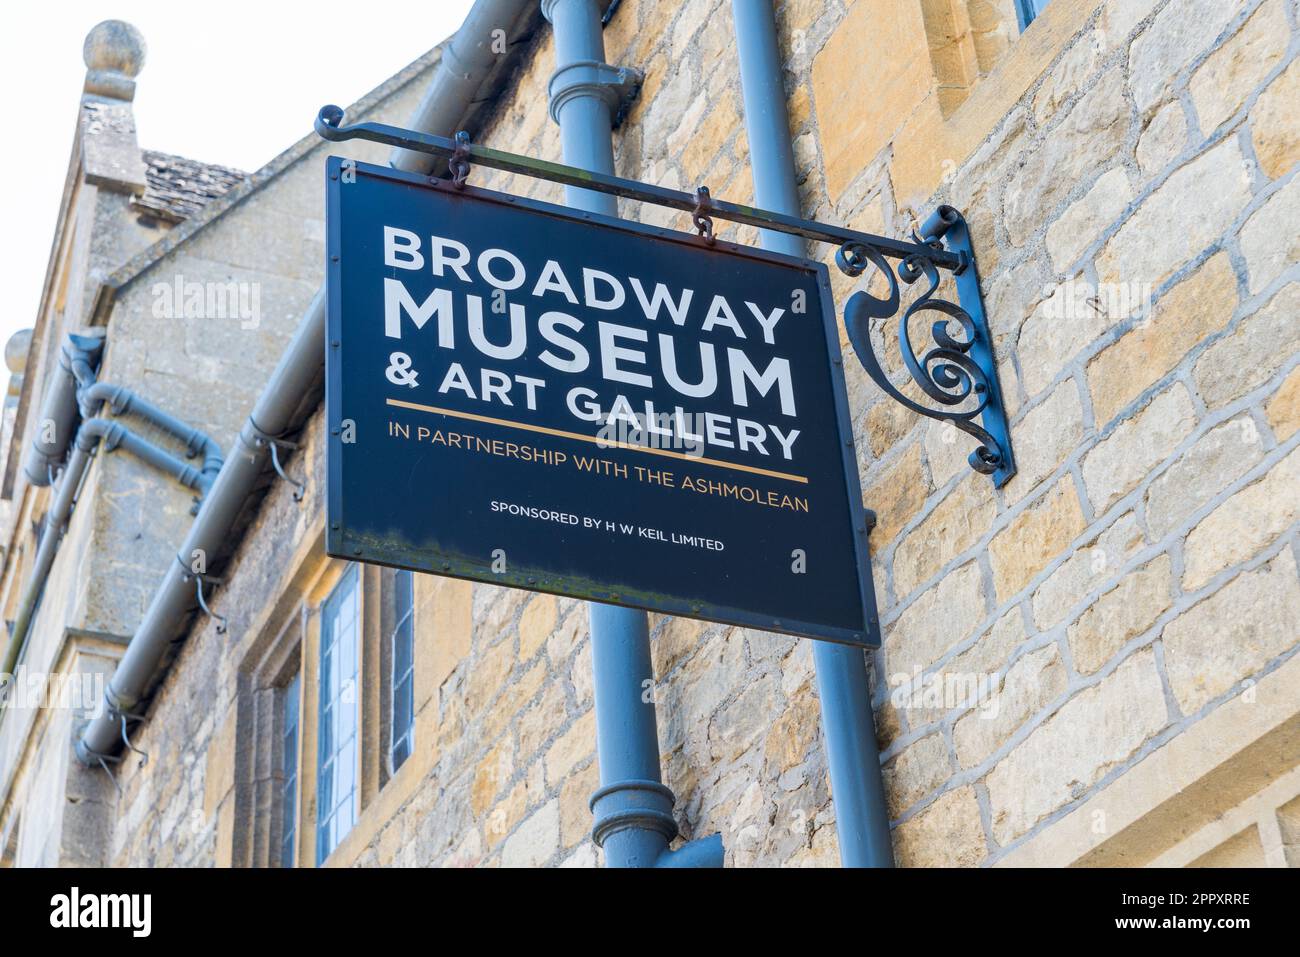 Musée et galerie d'art de Broadway dans le joli village de Cotswold à Broadway, Worcestershire, Angleterre, Royaume-Uni Banque D'Images